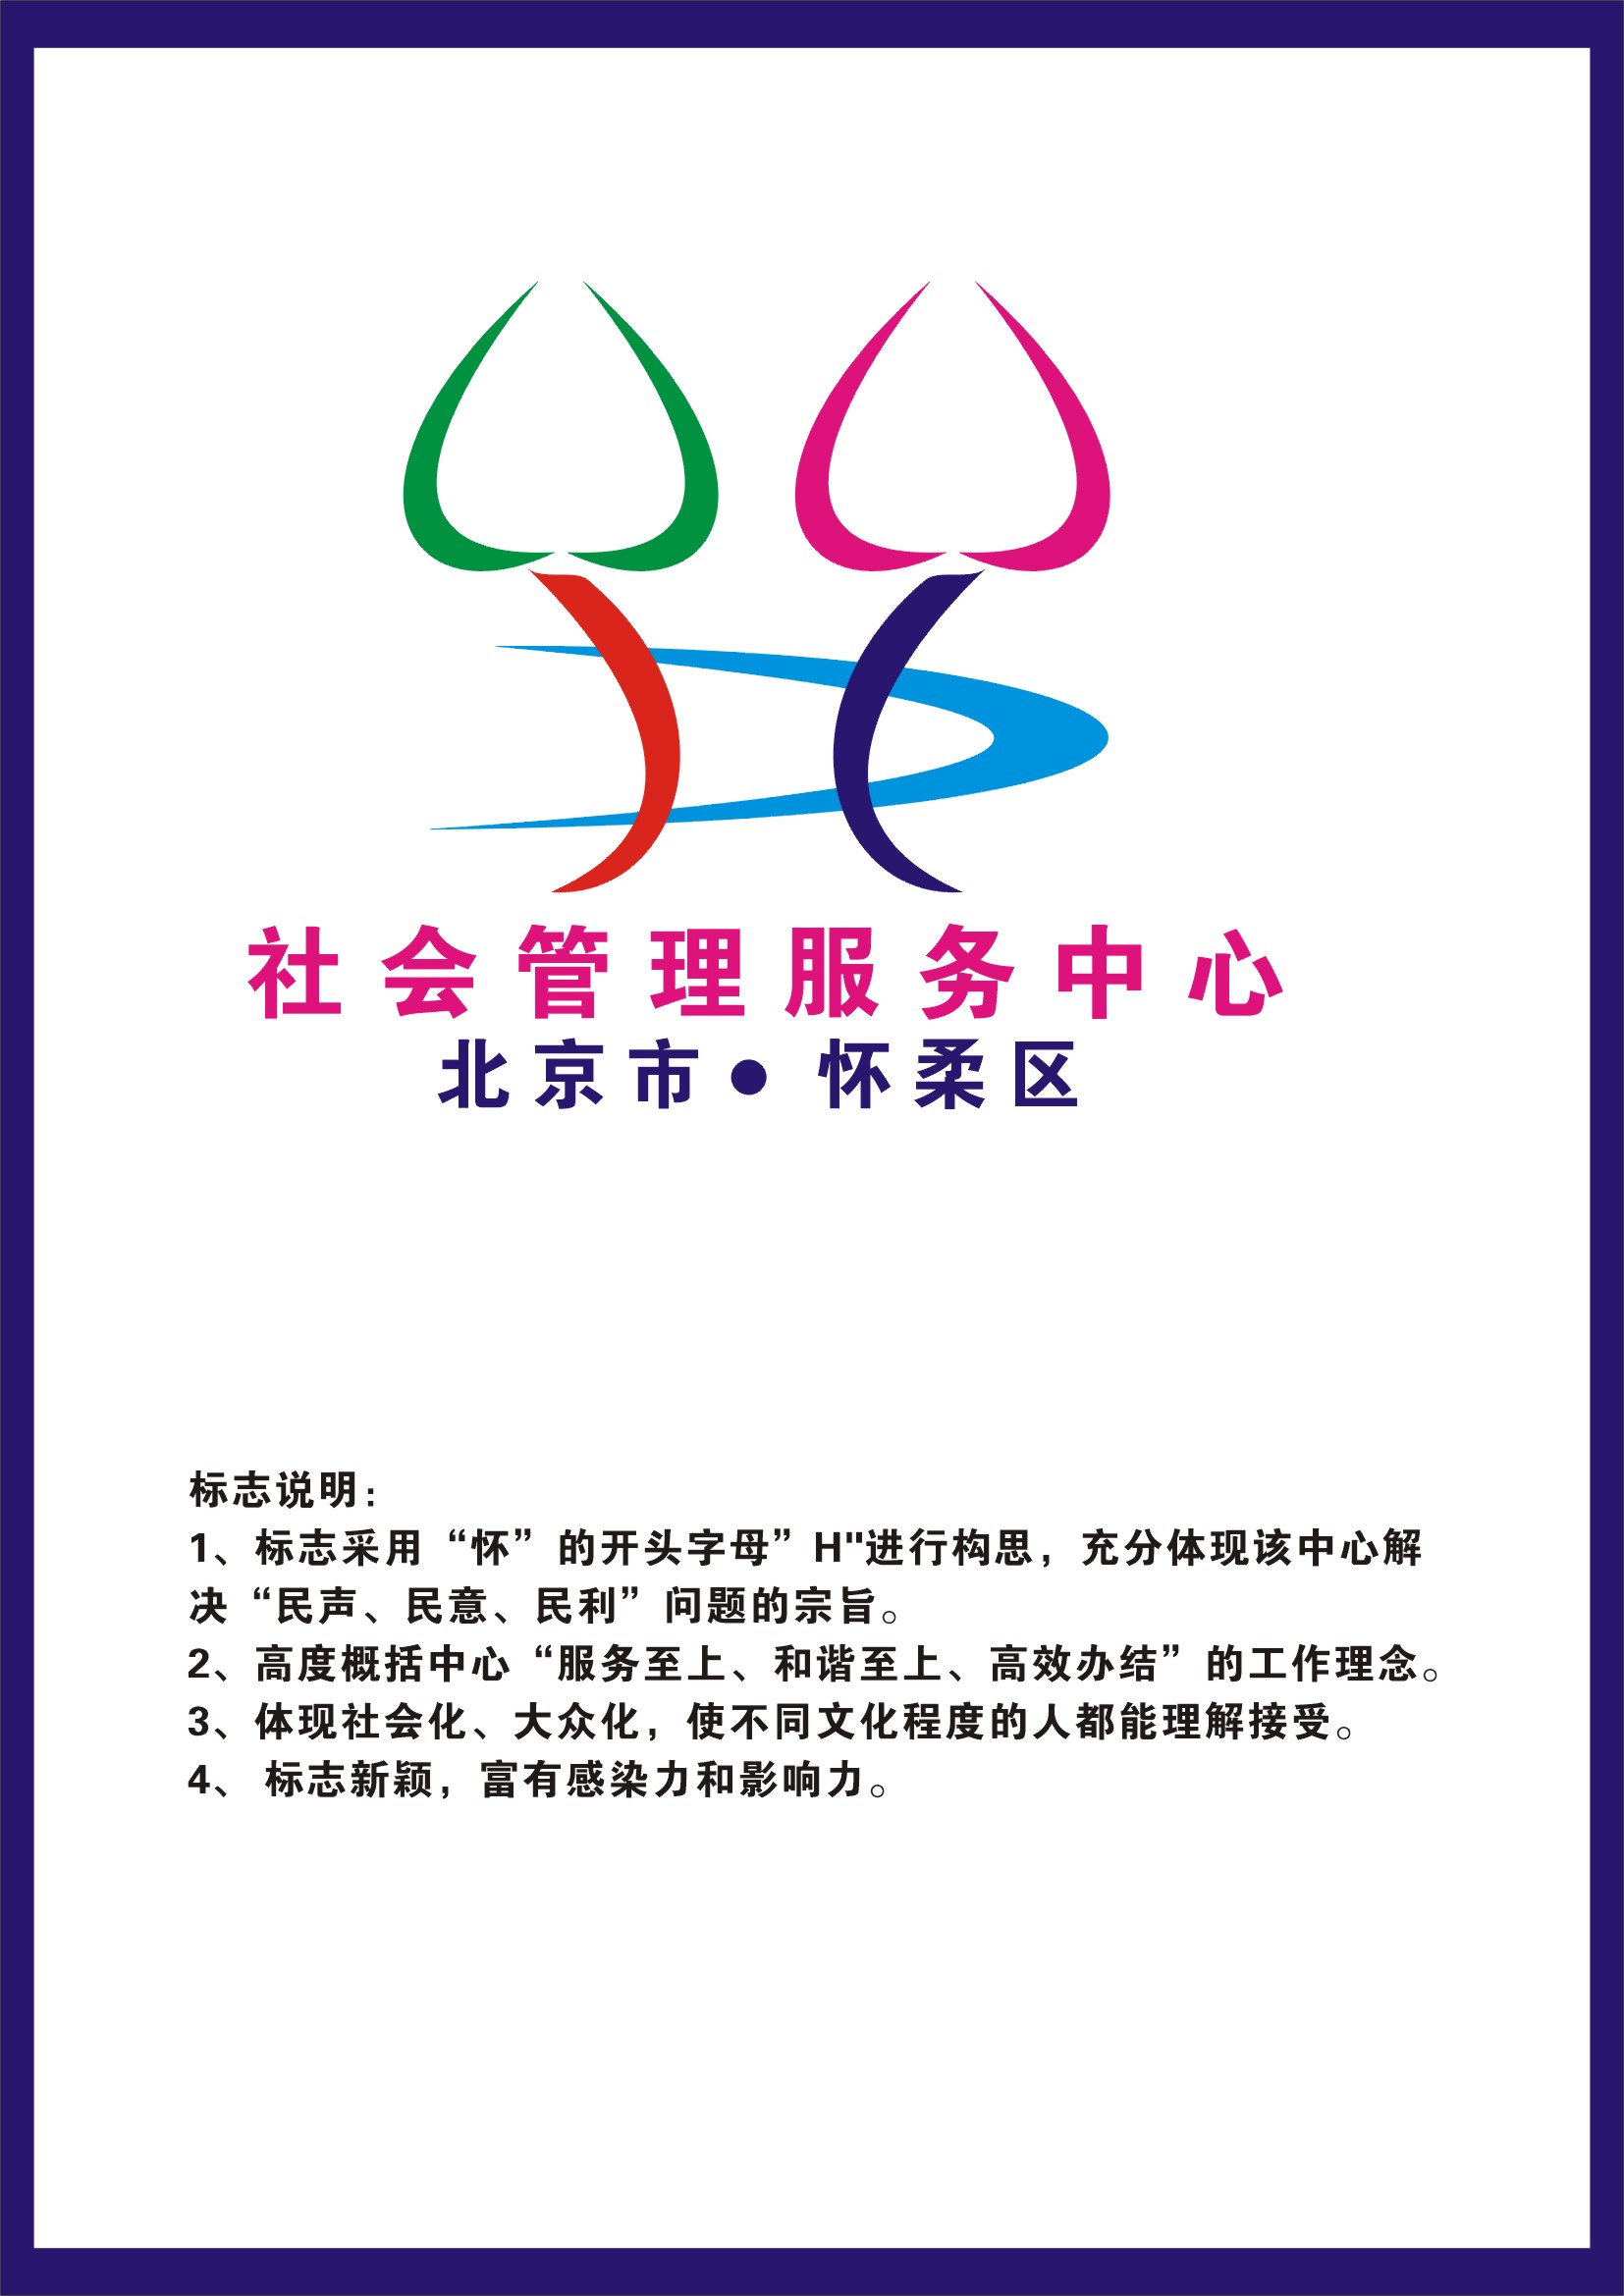 北京市怀柔区社会管理服务中心标志_1275993_k68威客网